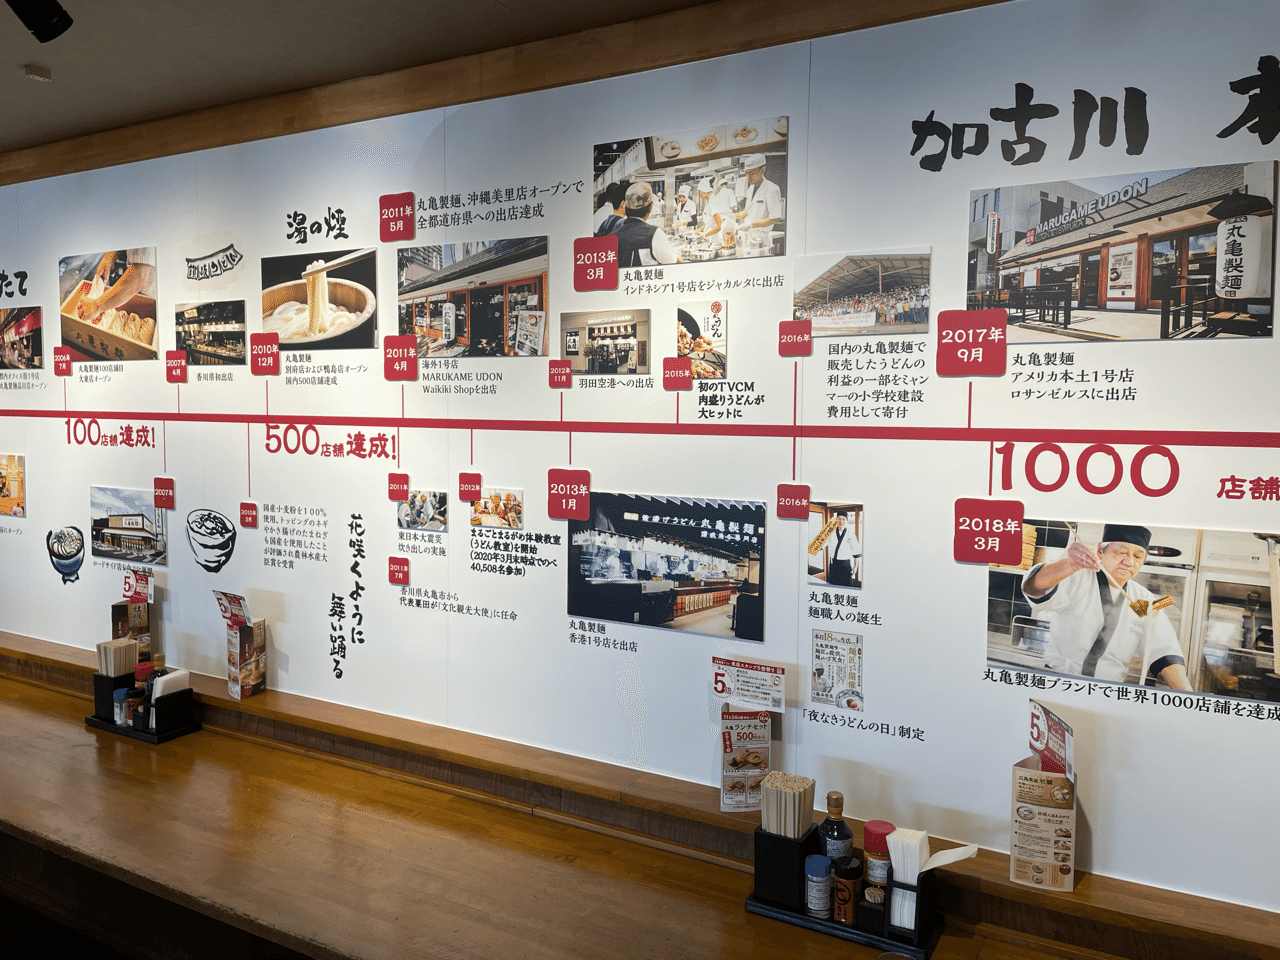 丸亀製麺創業店 兵庫県加古川市 に行って来ました 丸亀製麺が好きな方は一度は行ってみたい店舗です 丸亀製麺の歴史を知れる壁紙 も必見です 我ら幸せ探検隊 Note